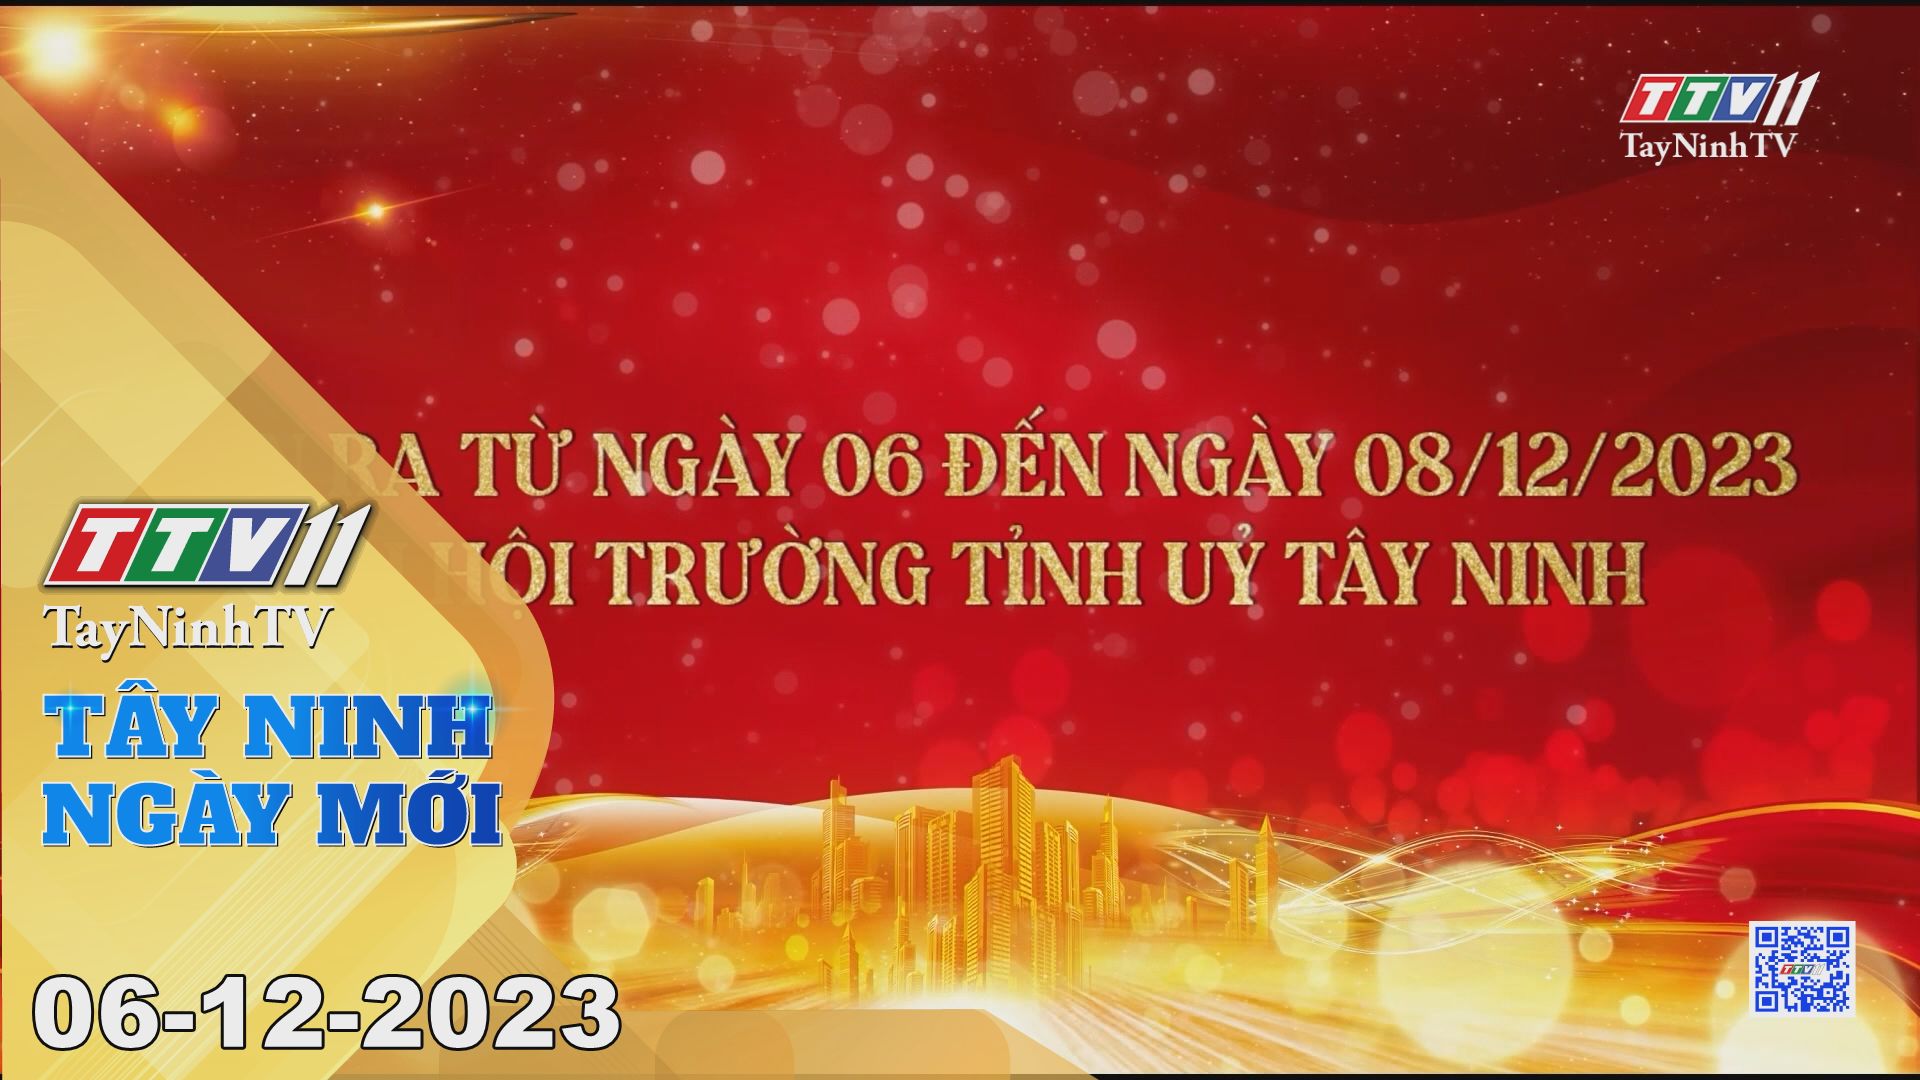 Tây Ninh ngày mới 06-12-2023 | Tin tức hôm nay | TayNinhTV